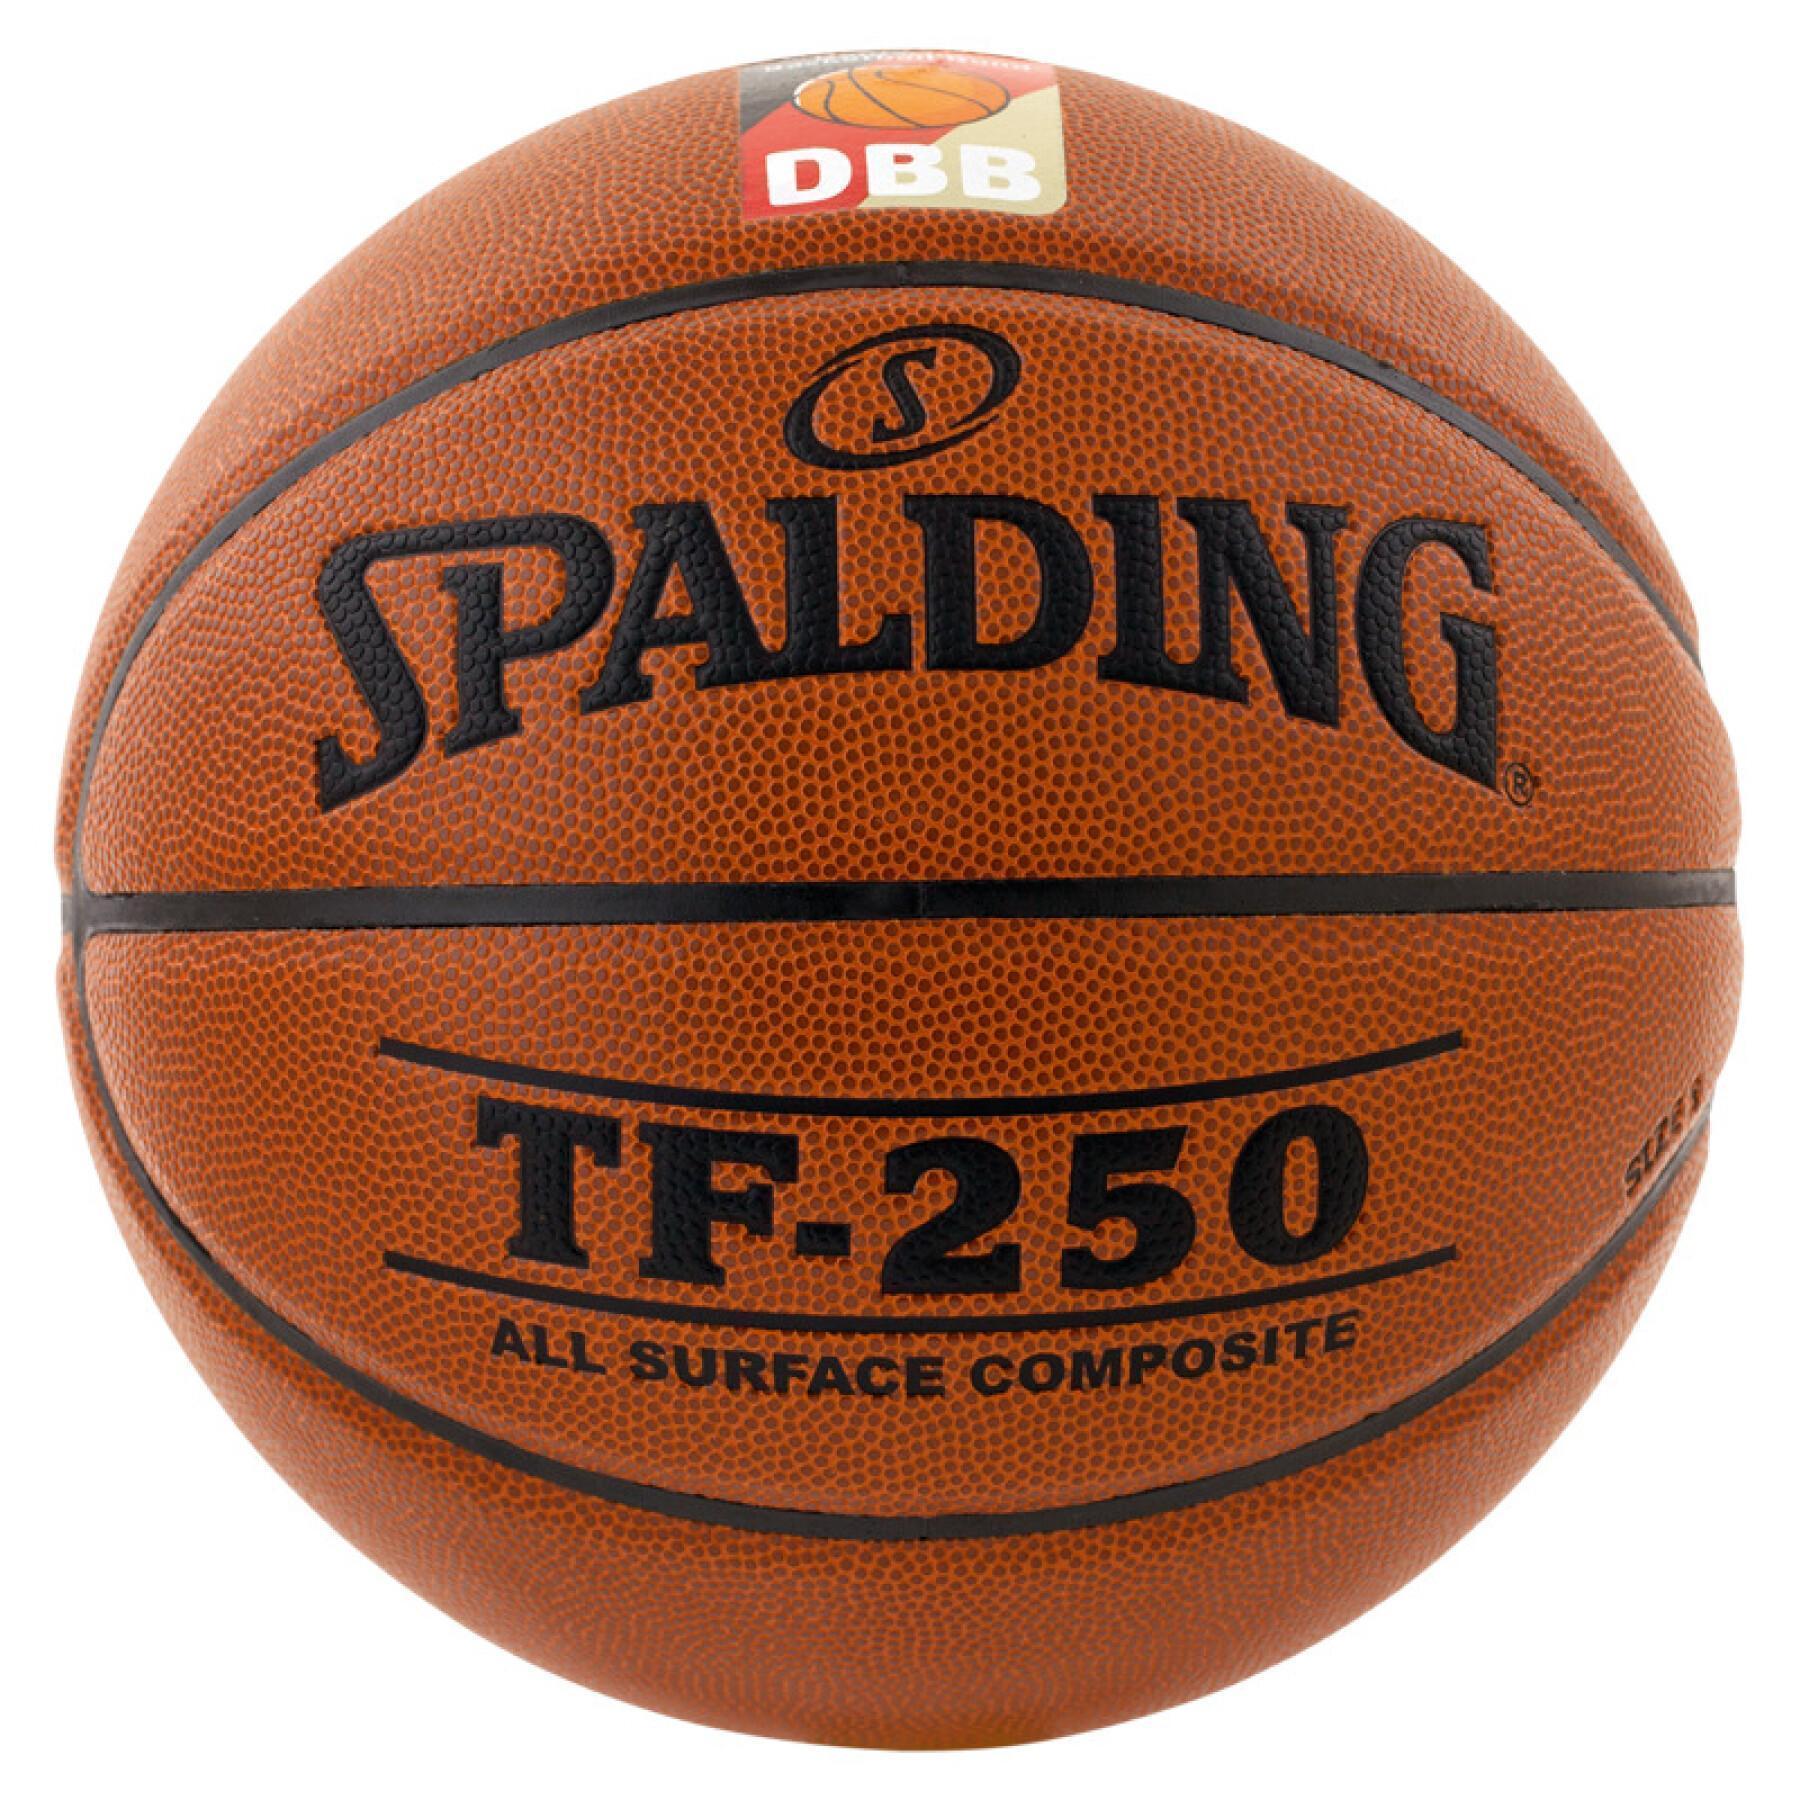 Ballon Spalding DBB Tf250 (74-592z)